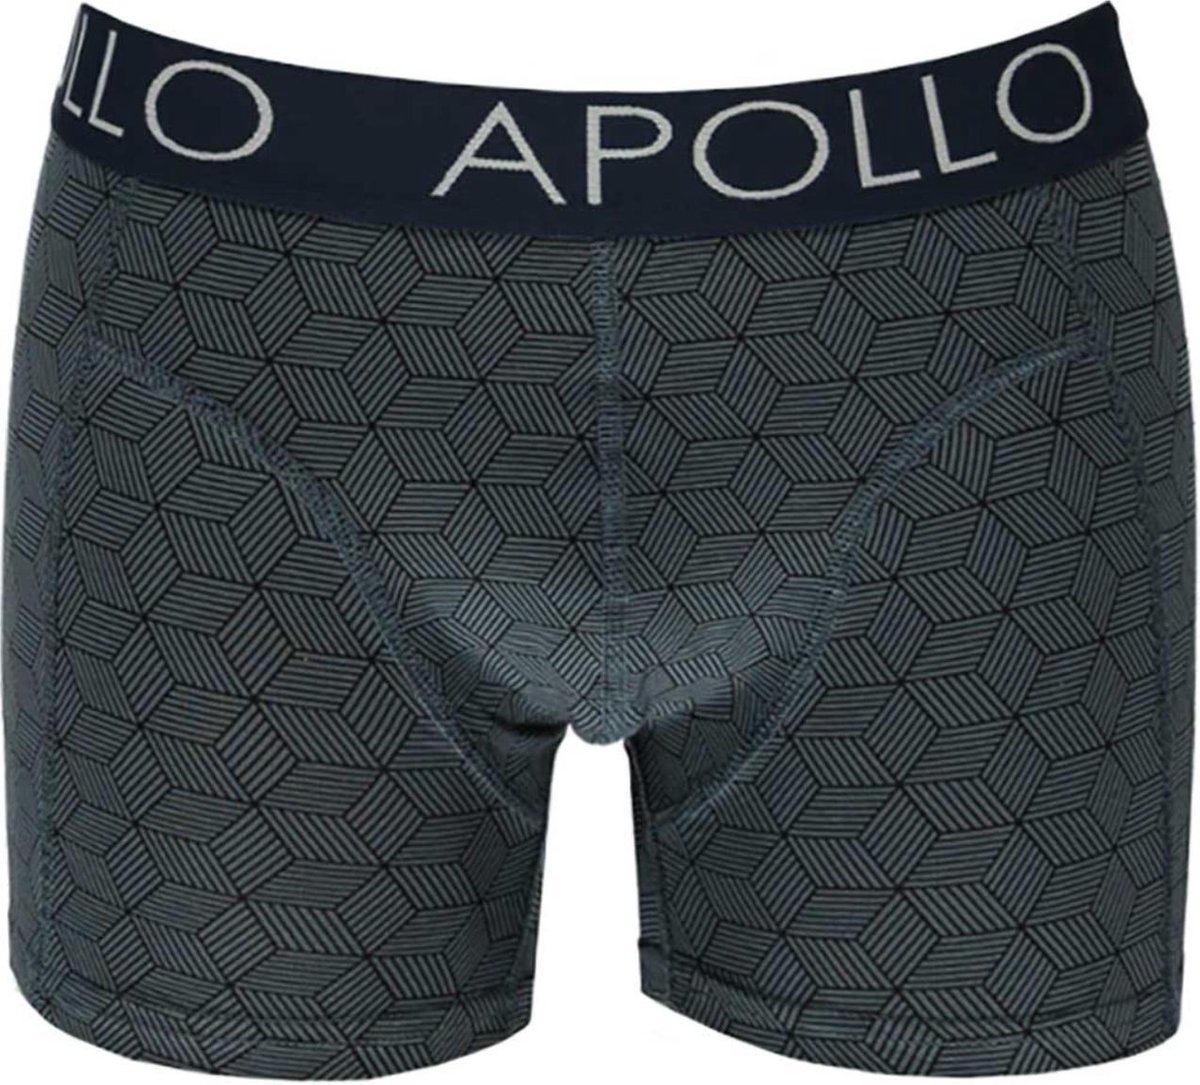 Apollo Ondergoed Heren - Boxershort Heren - 2 - Pack - Blauw - Maat S